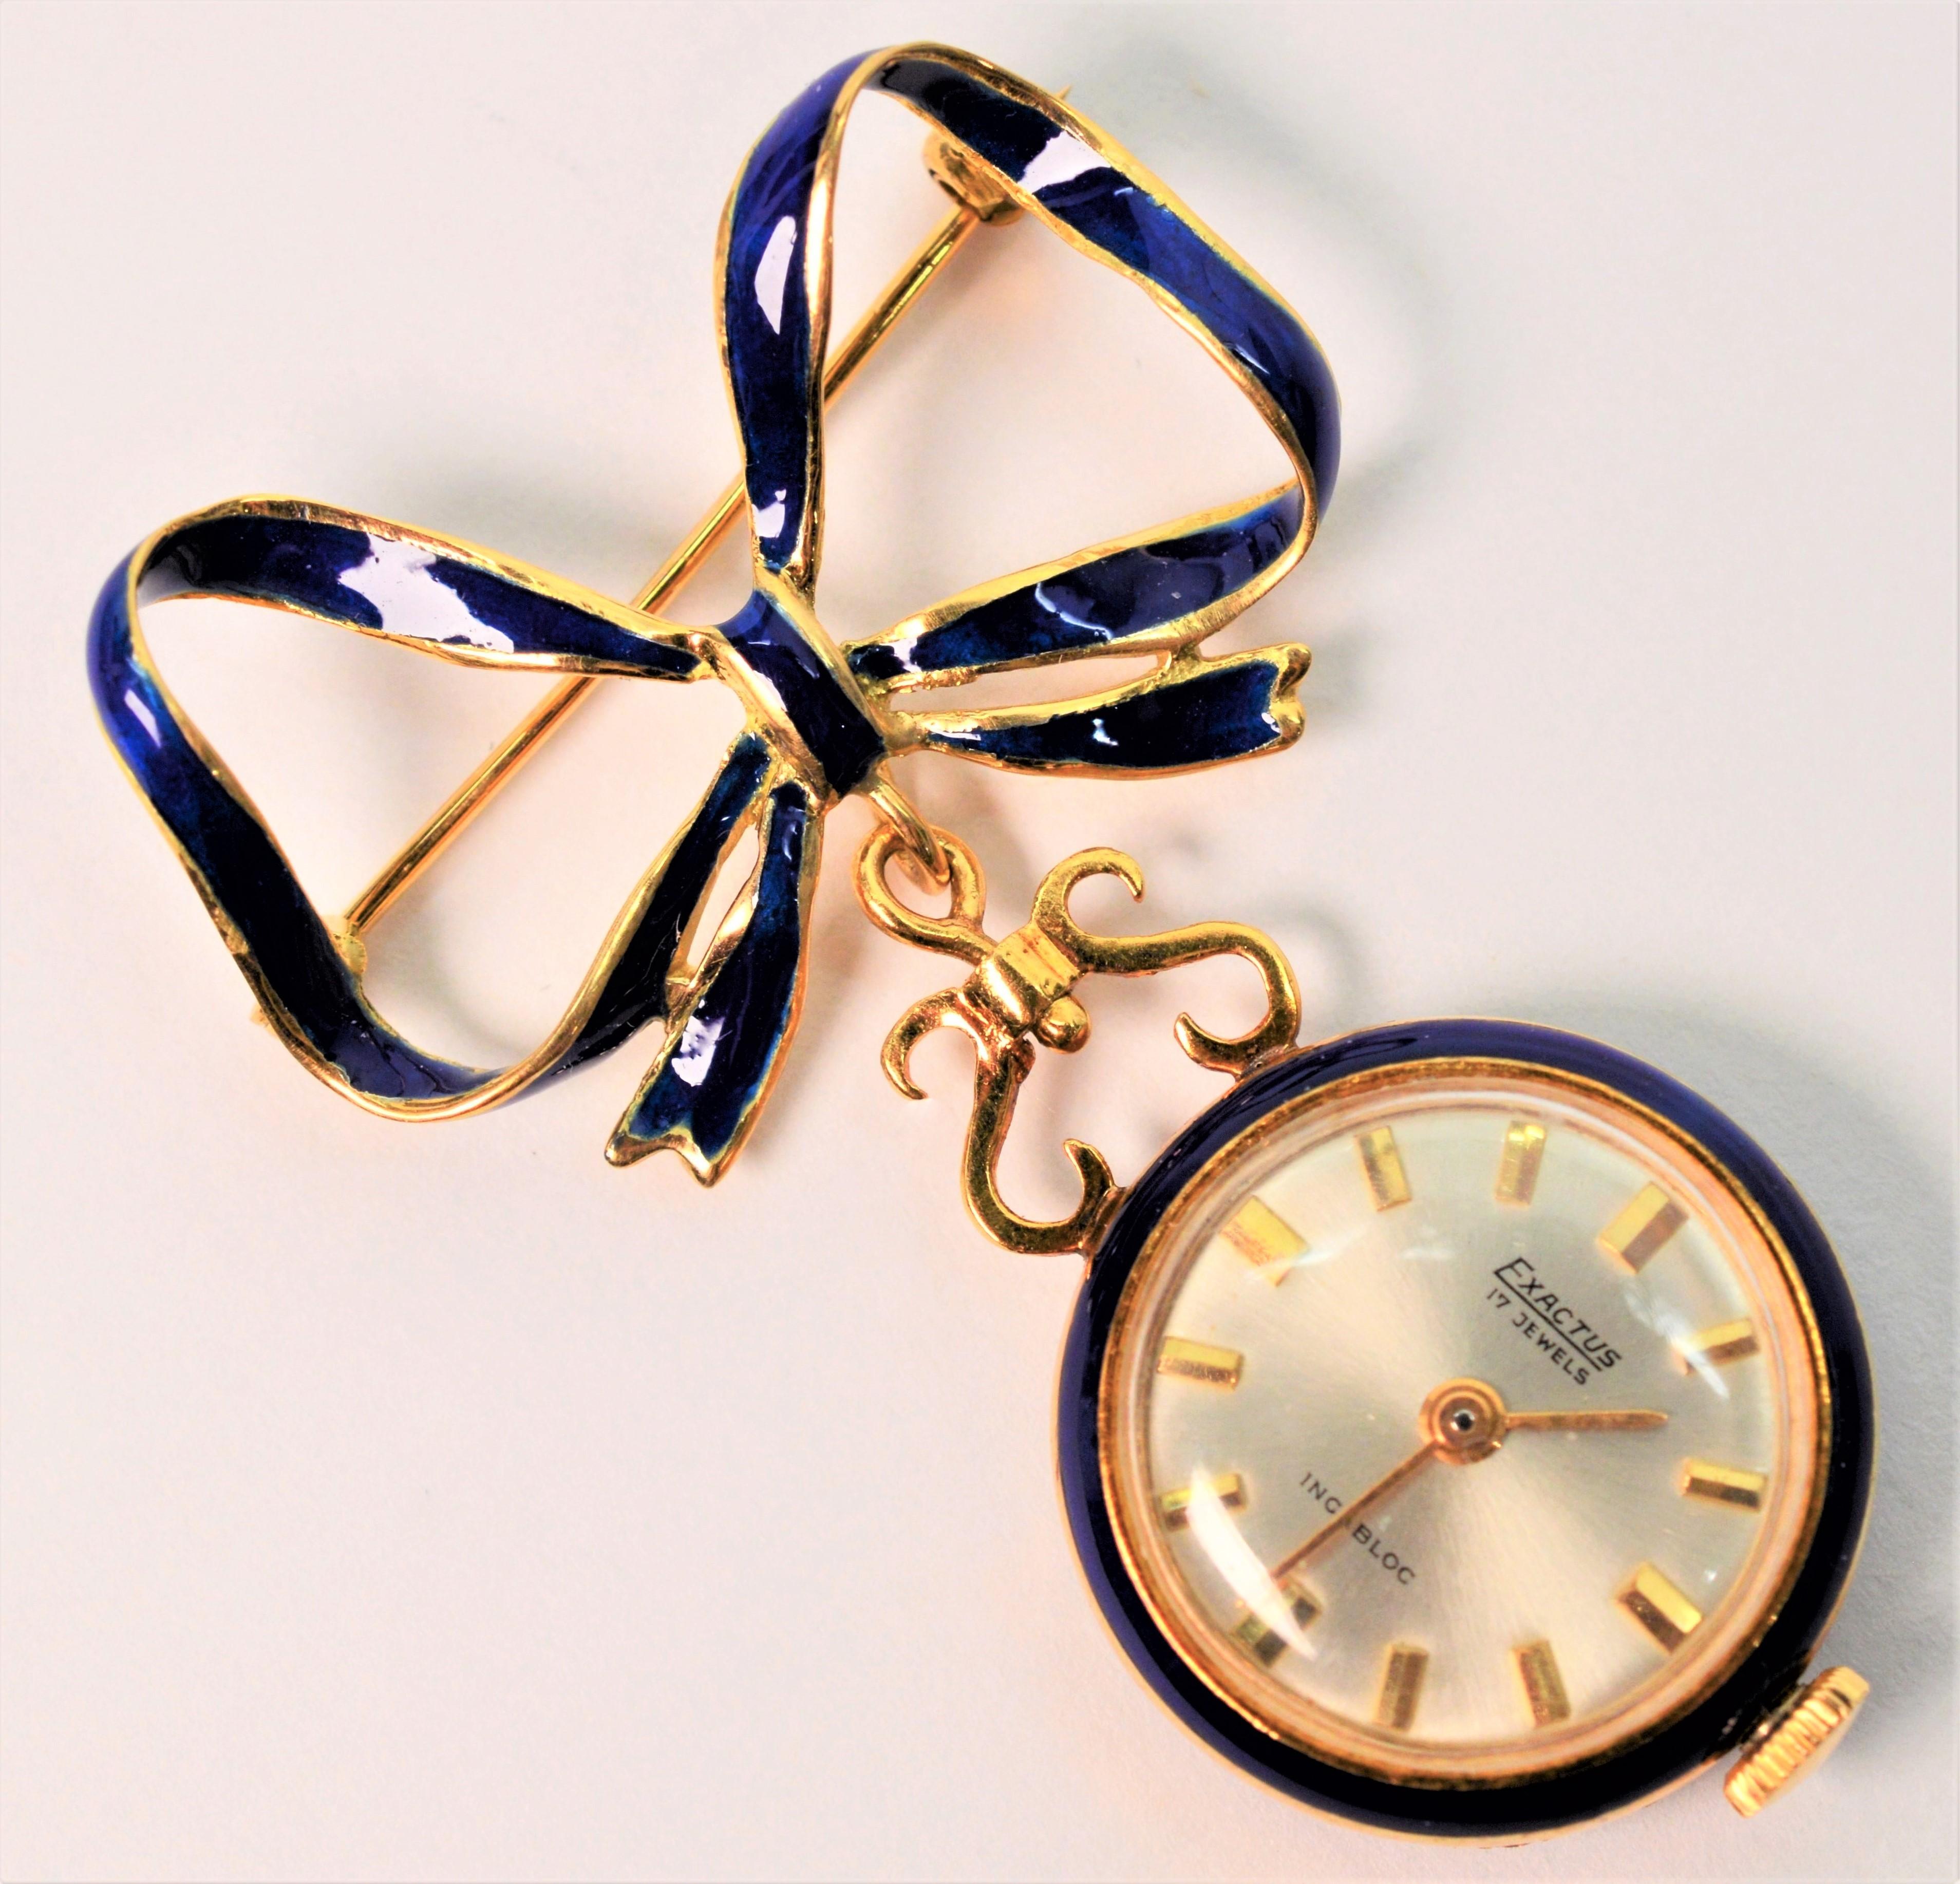 Diese in Italien gefertigte Brosche mit romantischem Charme beginnt mit einer zart gebundenen Schleife aus vierzehn Karat Gelbgold mit einem mittleren Band aus kobaltblauem Email. Ein runder 20,72 mm (3/4 Zoll) großer, goldener Uhrenbügel ist an der